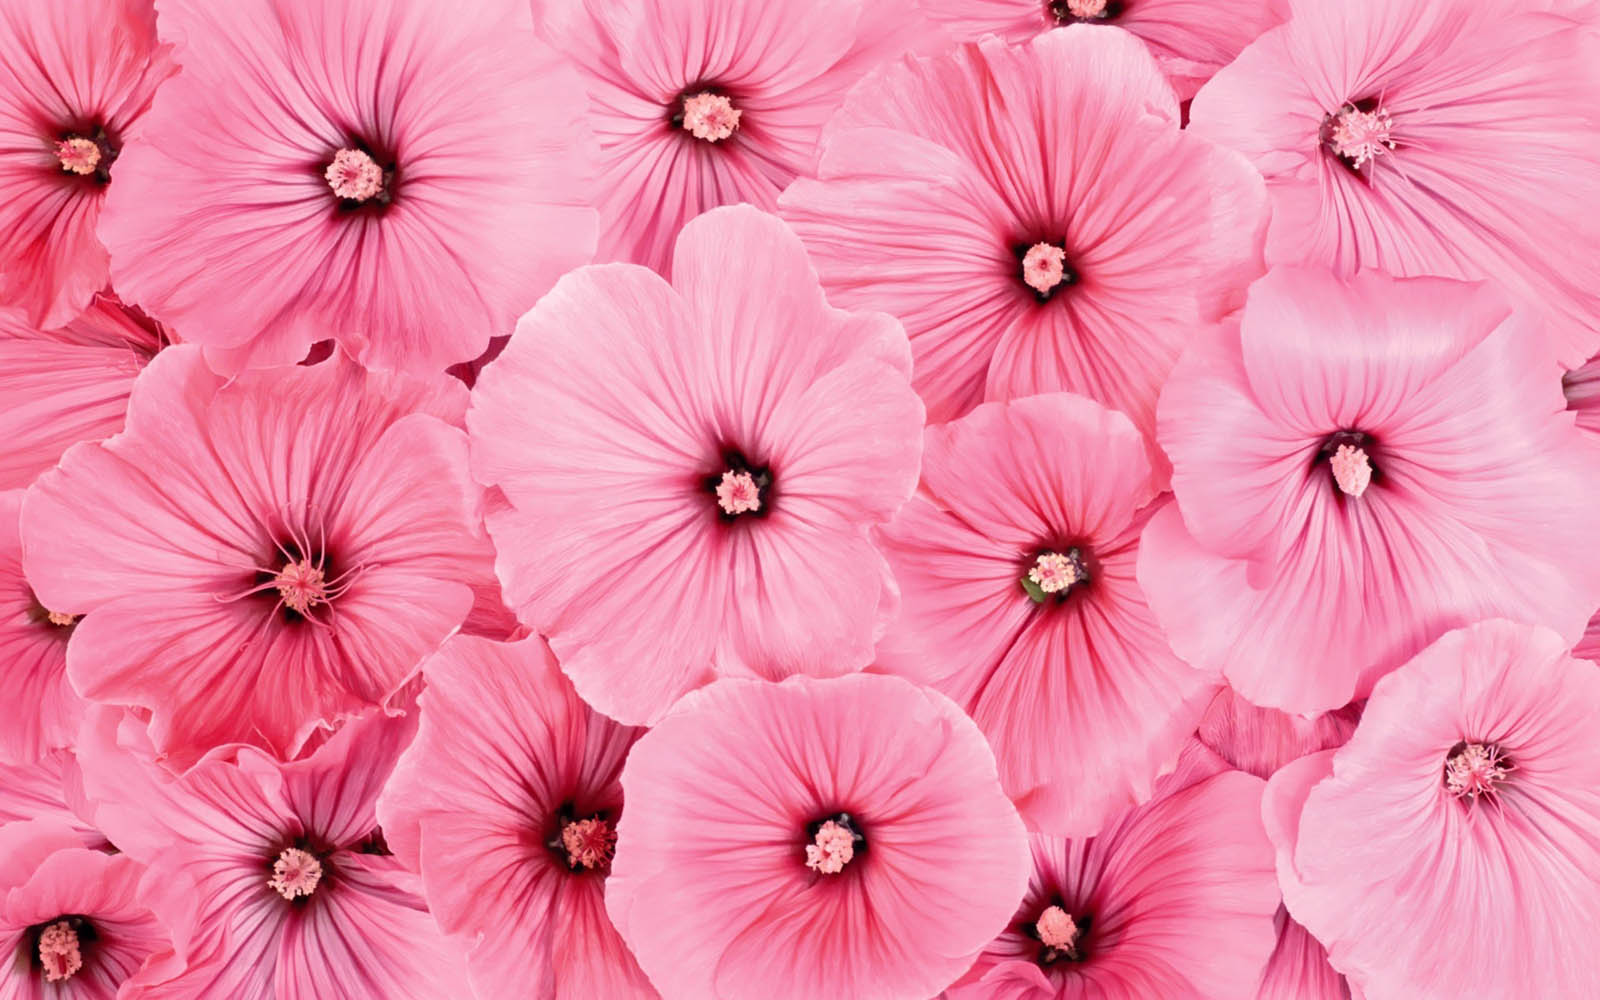  Pink Flowers Wallpapers PinkFlowers Desktop Wallpapers Pink 1600x1000